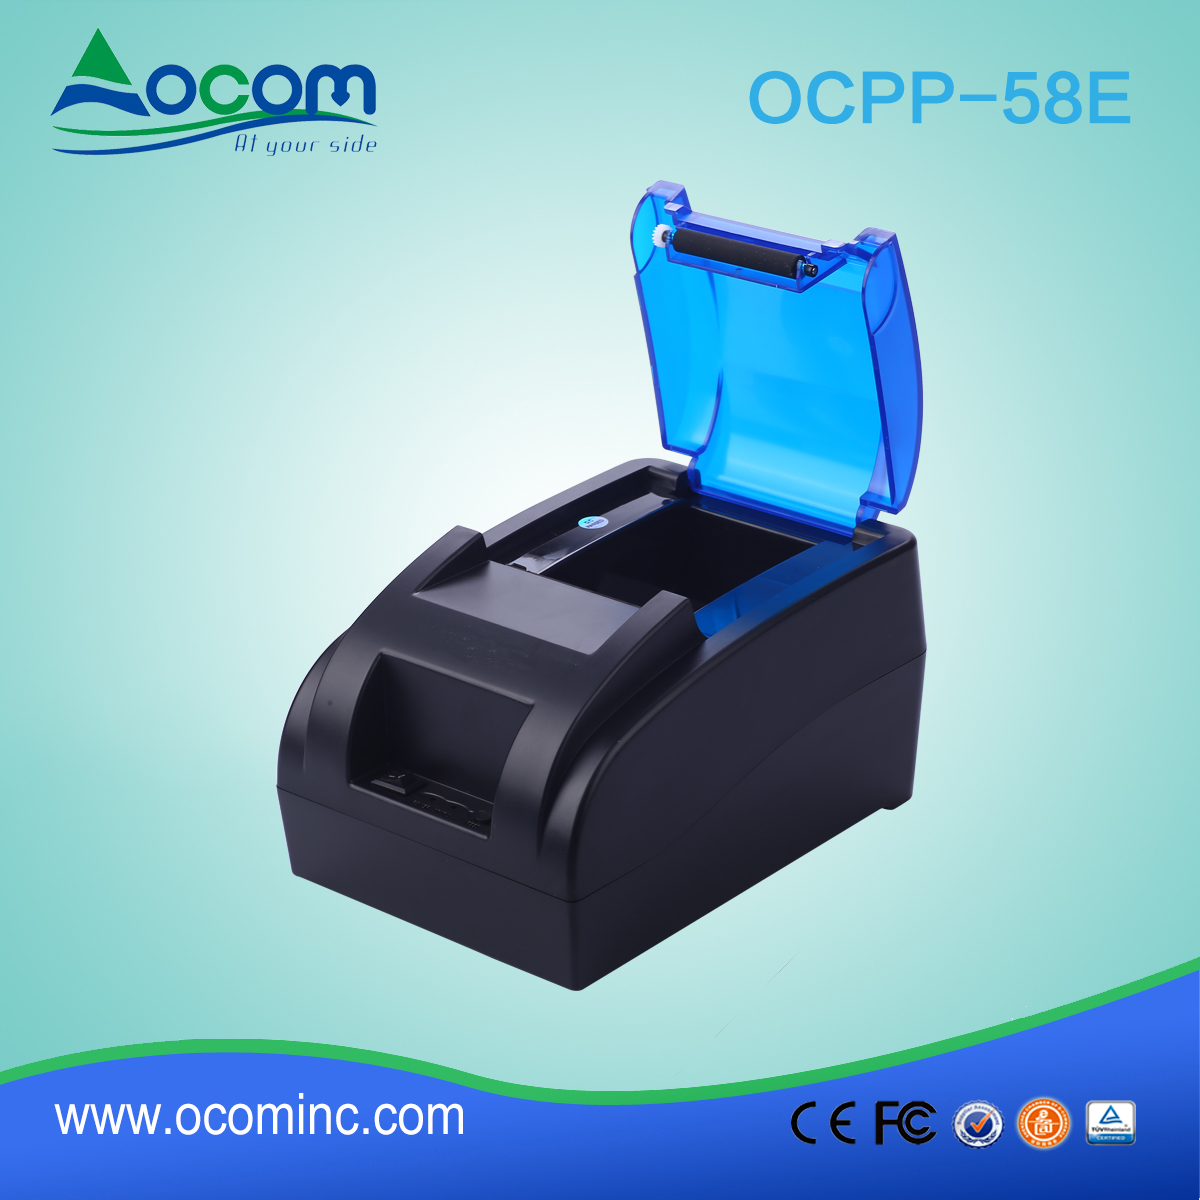 OCPP -58E-U Stampante termica per ricevute 58mm con alimentatore incorporato